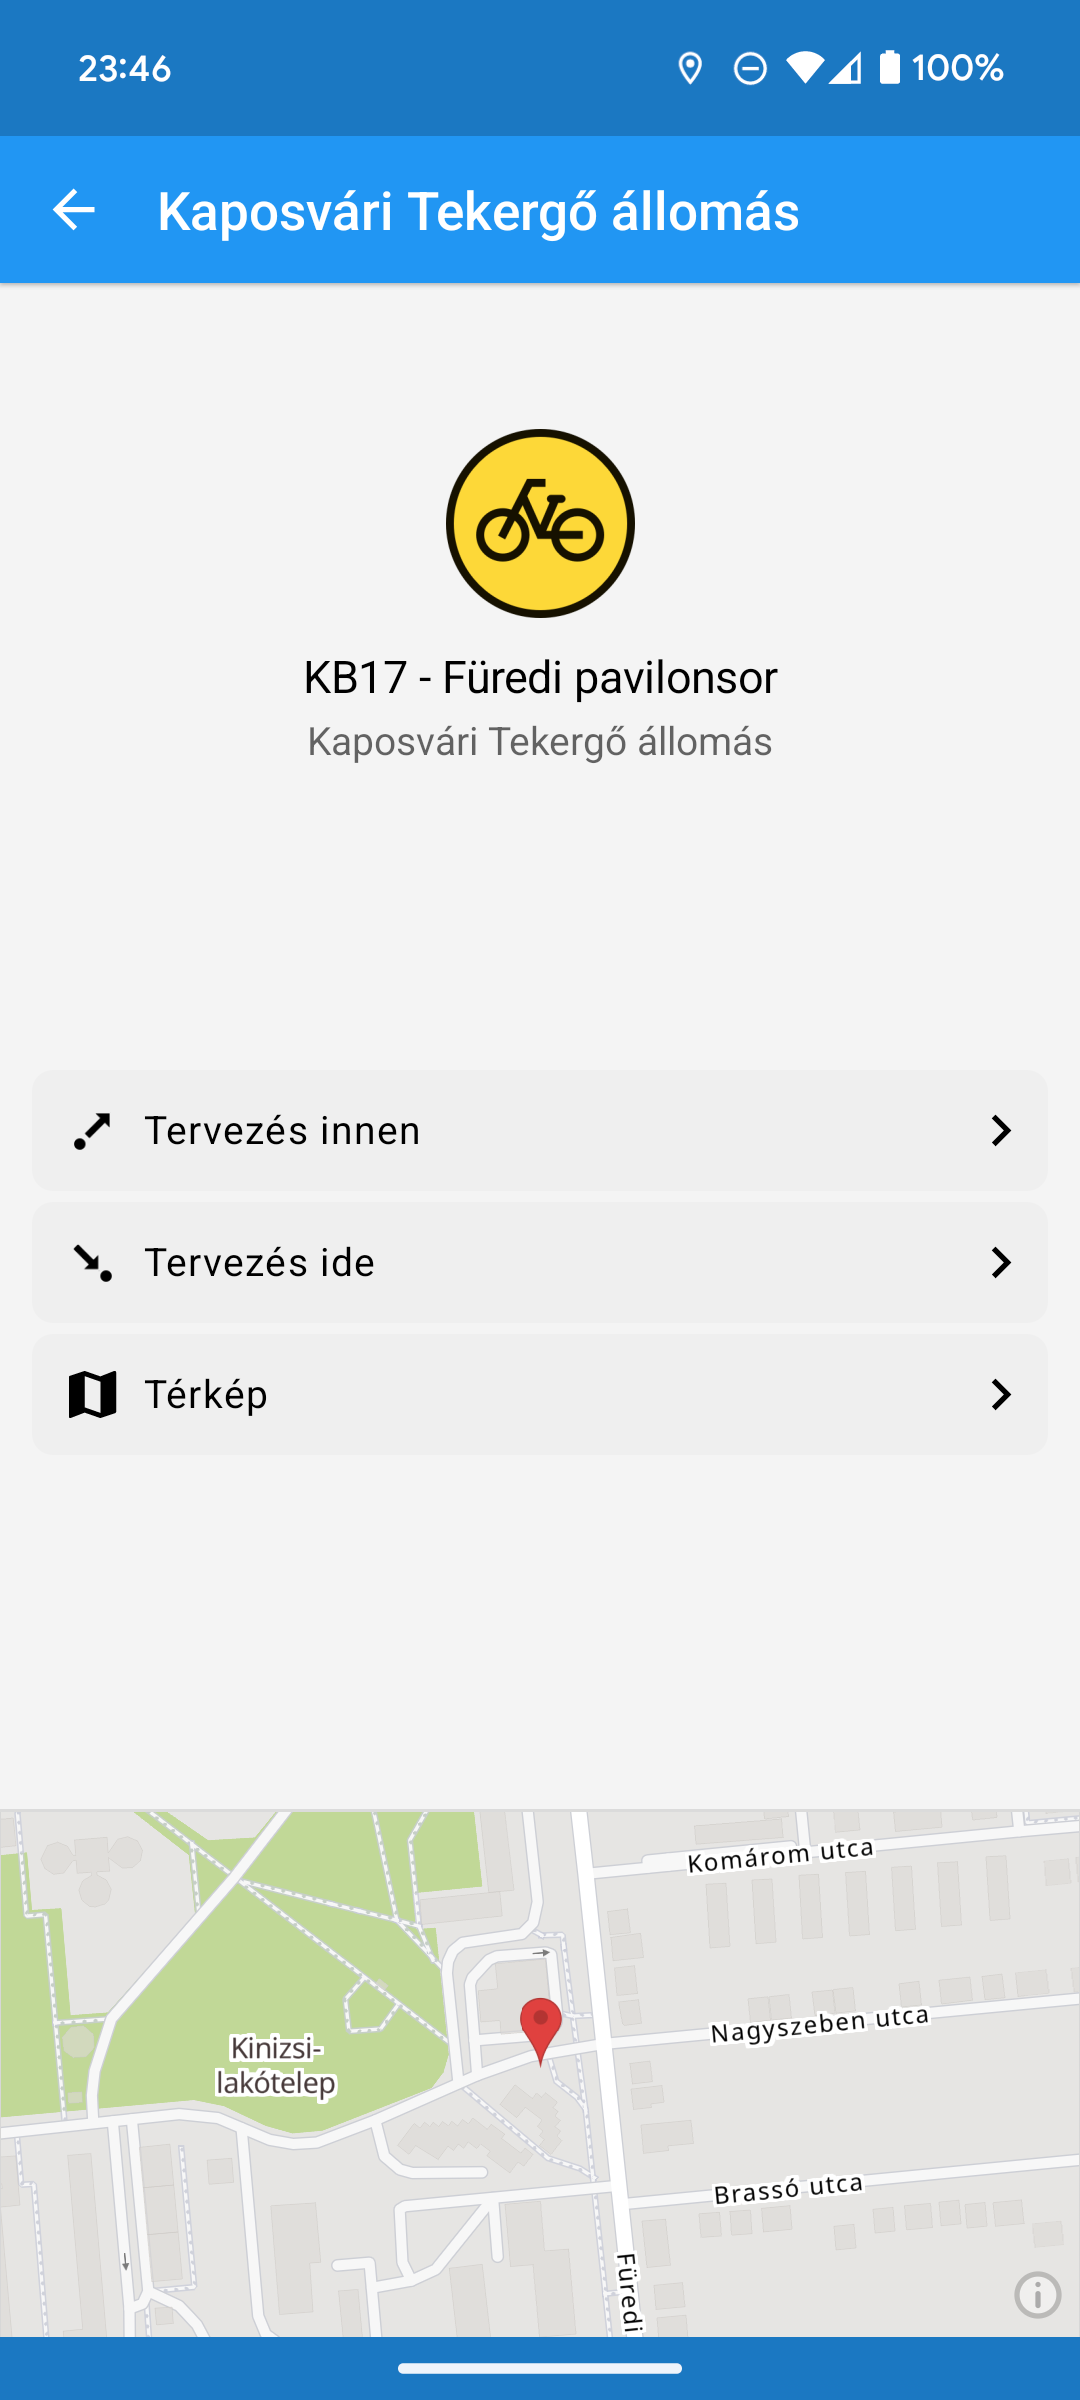 Kaposvári Tekergő állomások már a menetrend.app-ban is